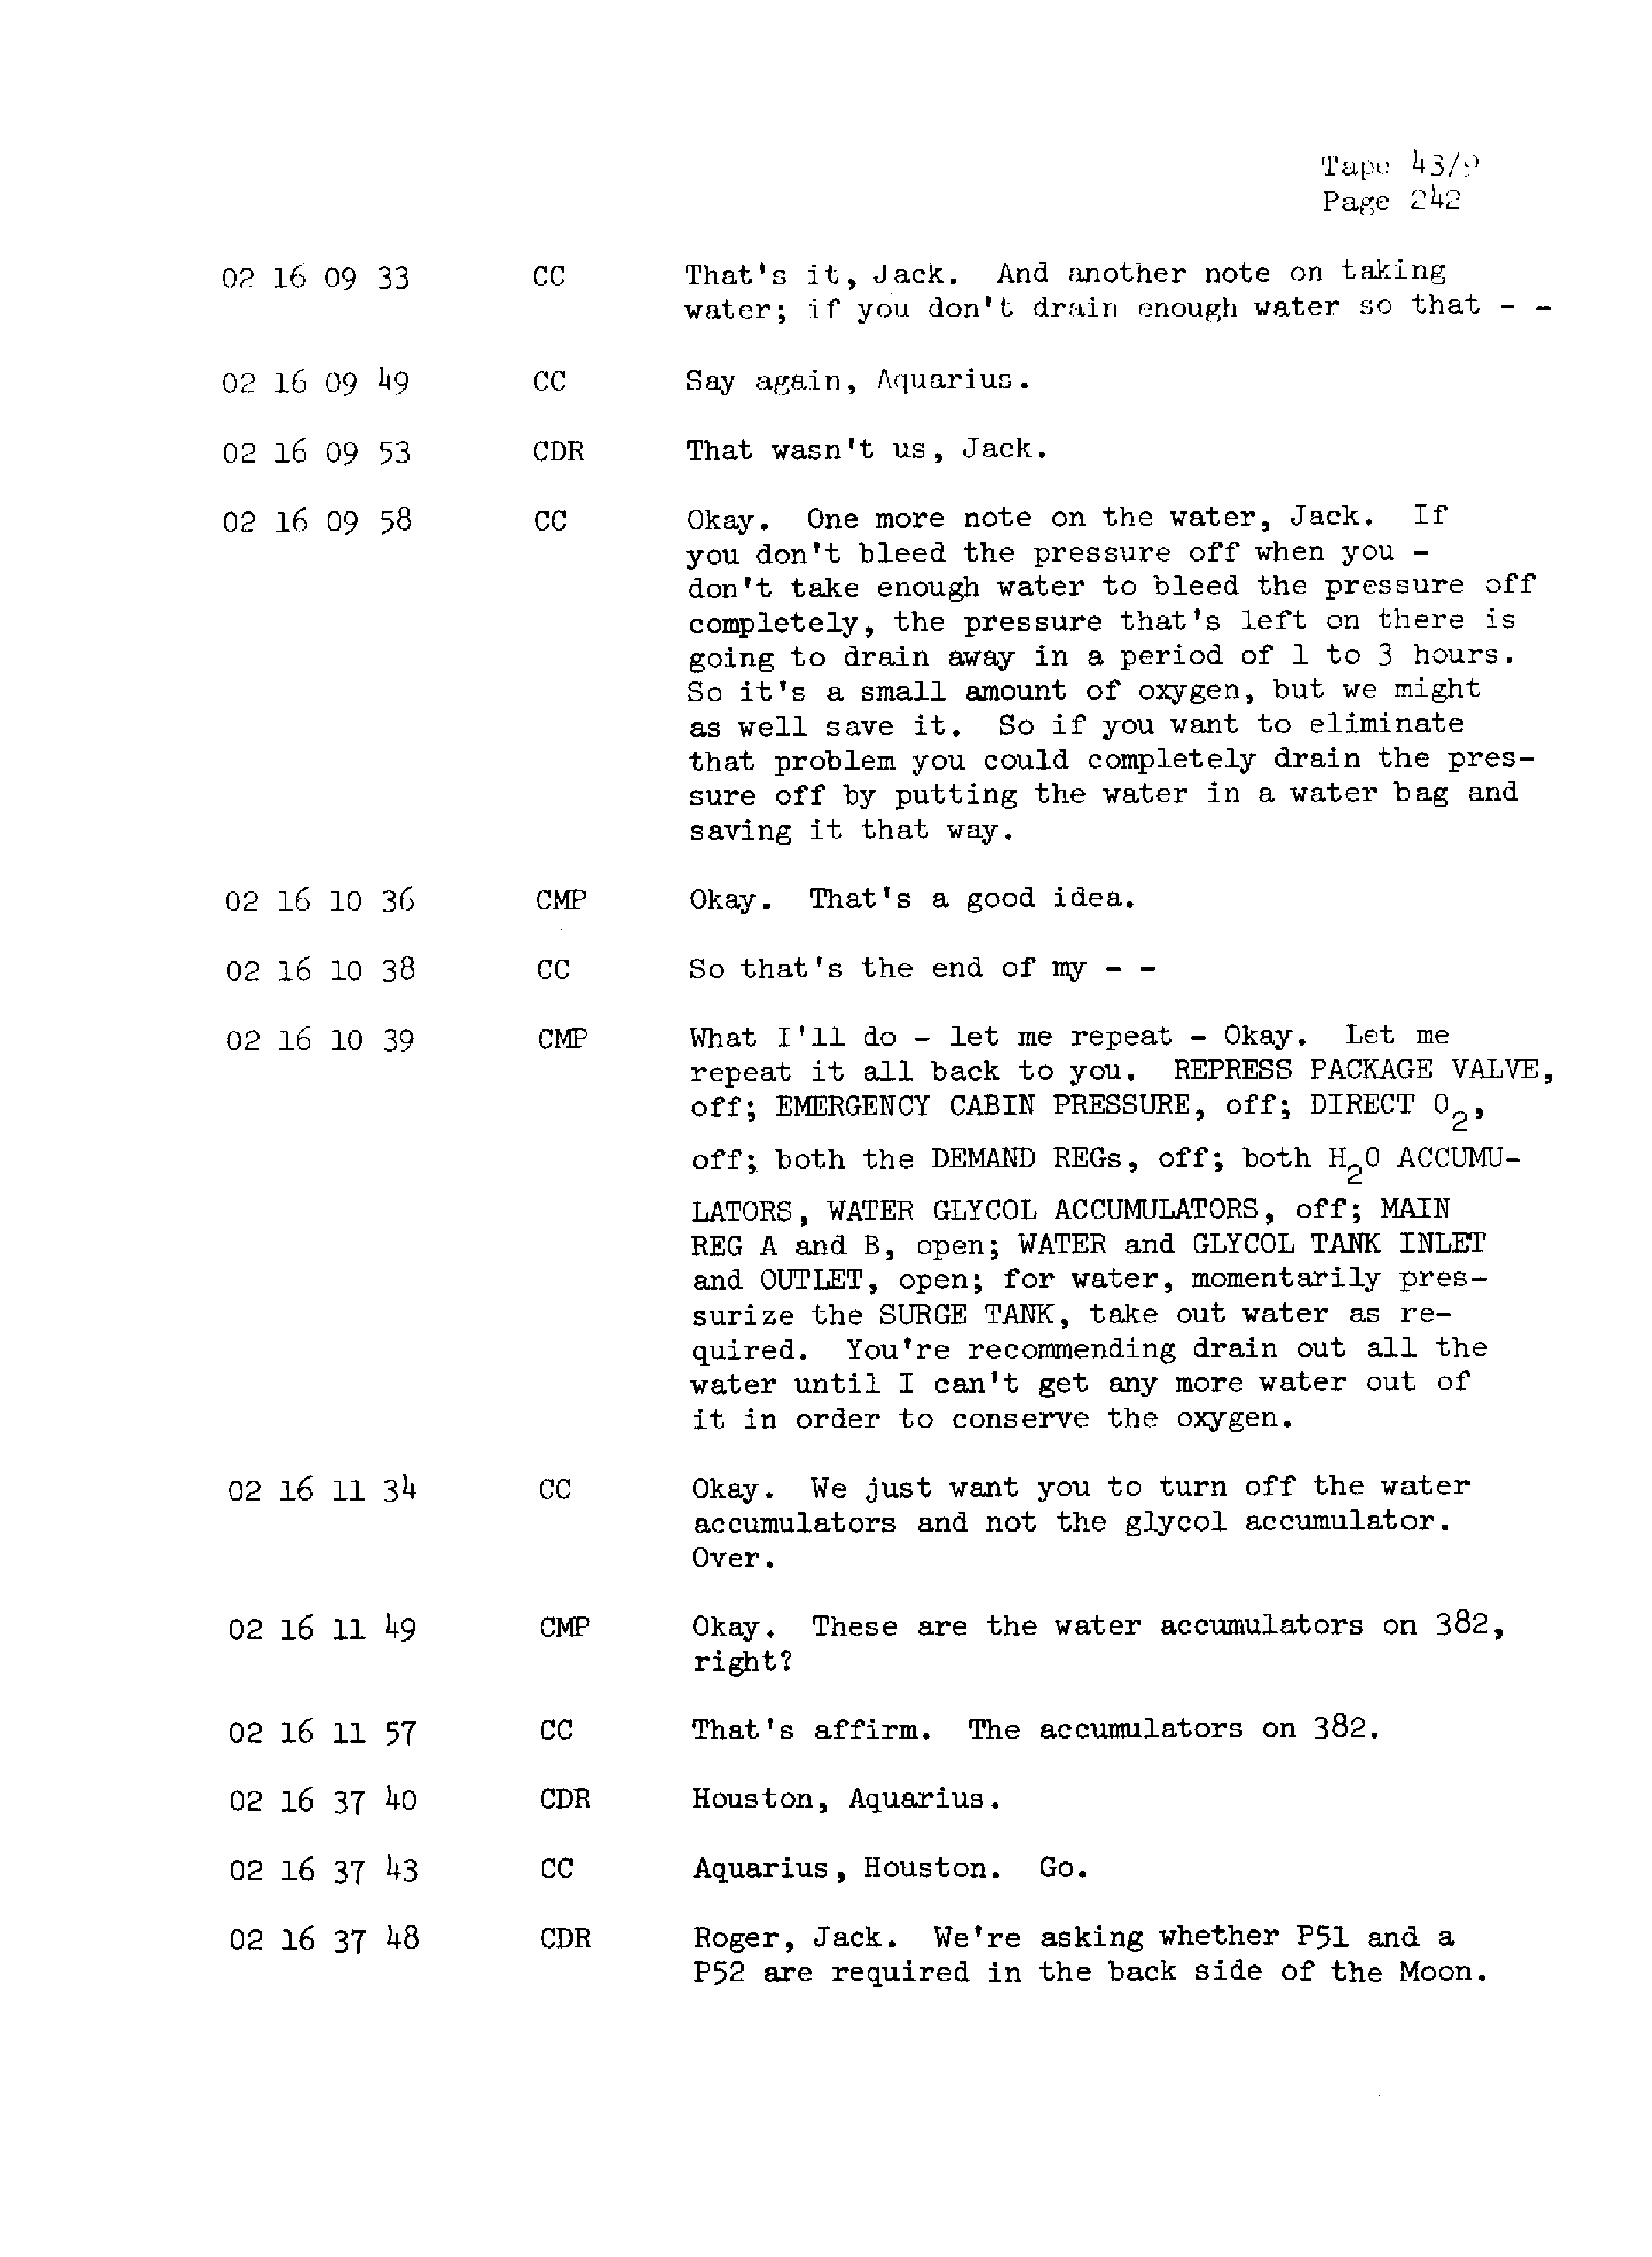 Page 249 of Apollo 13’s original transcript